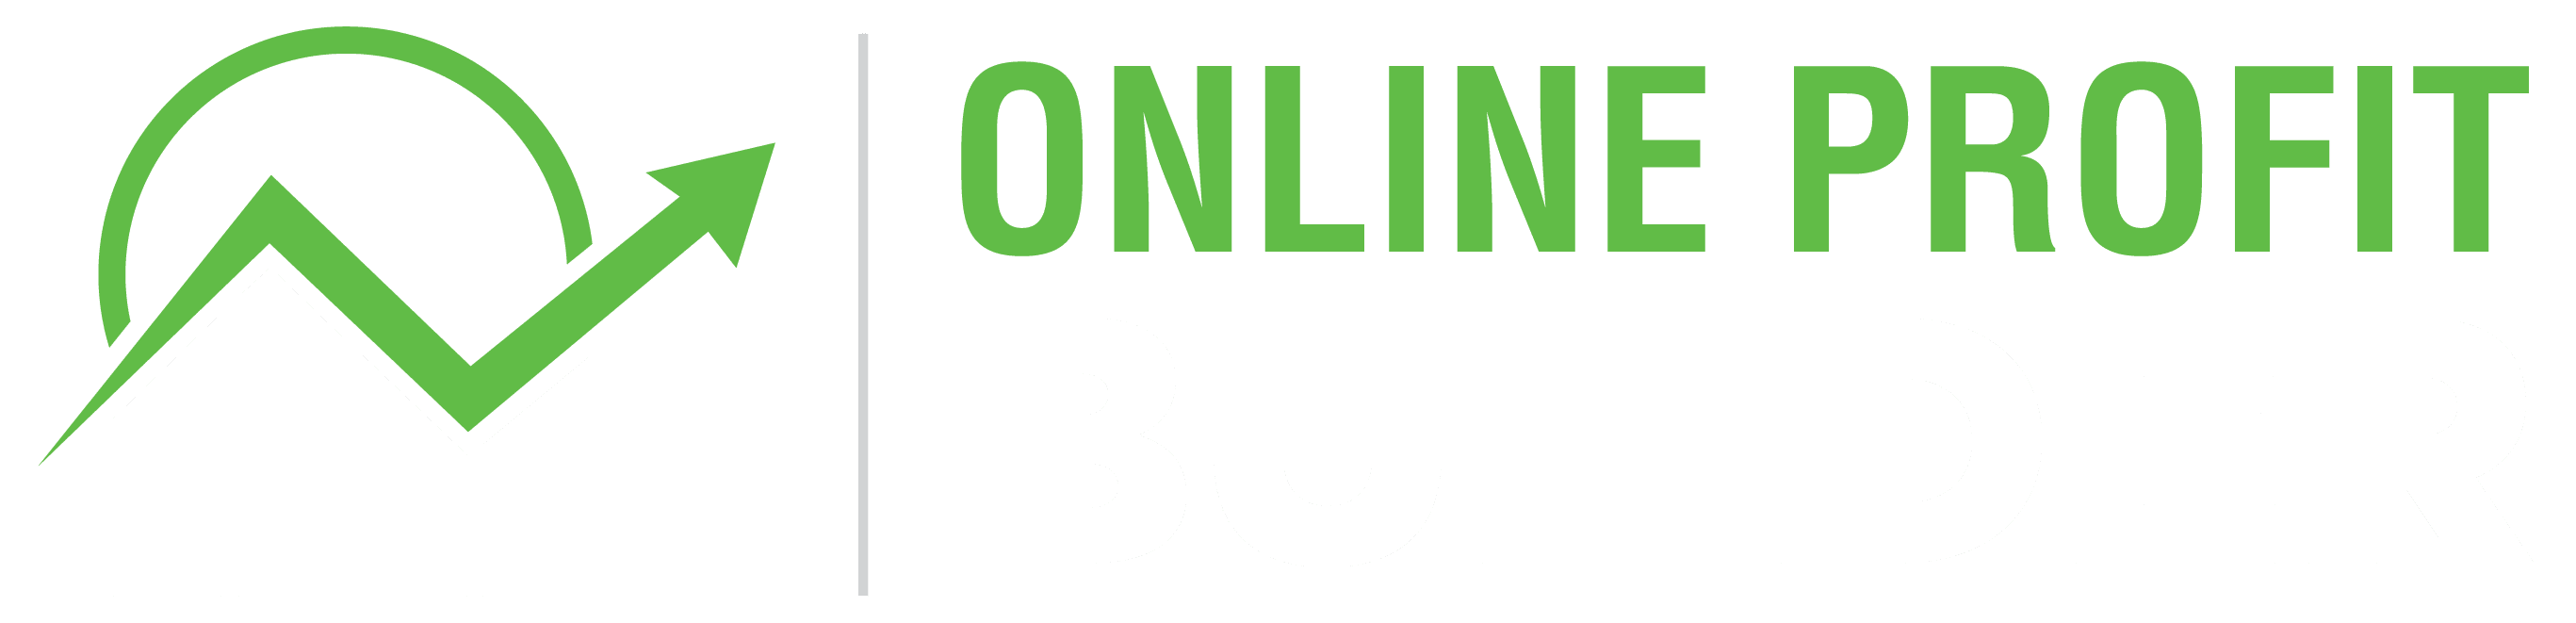 Online-Profit-Builder-v2